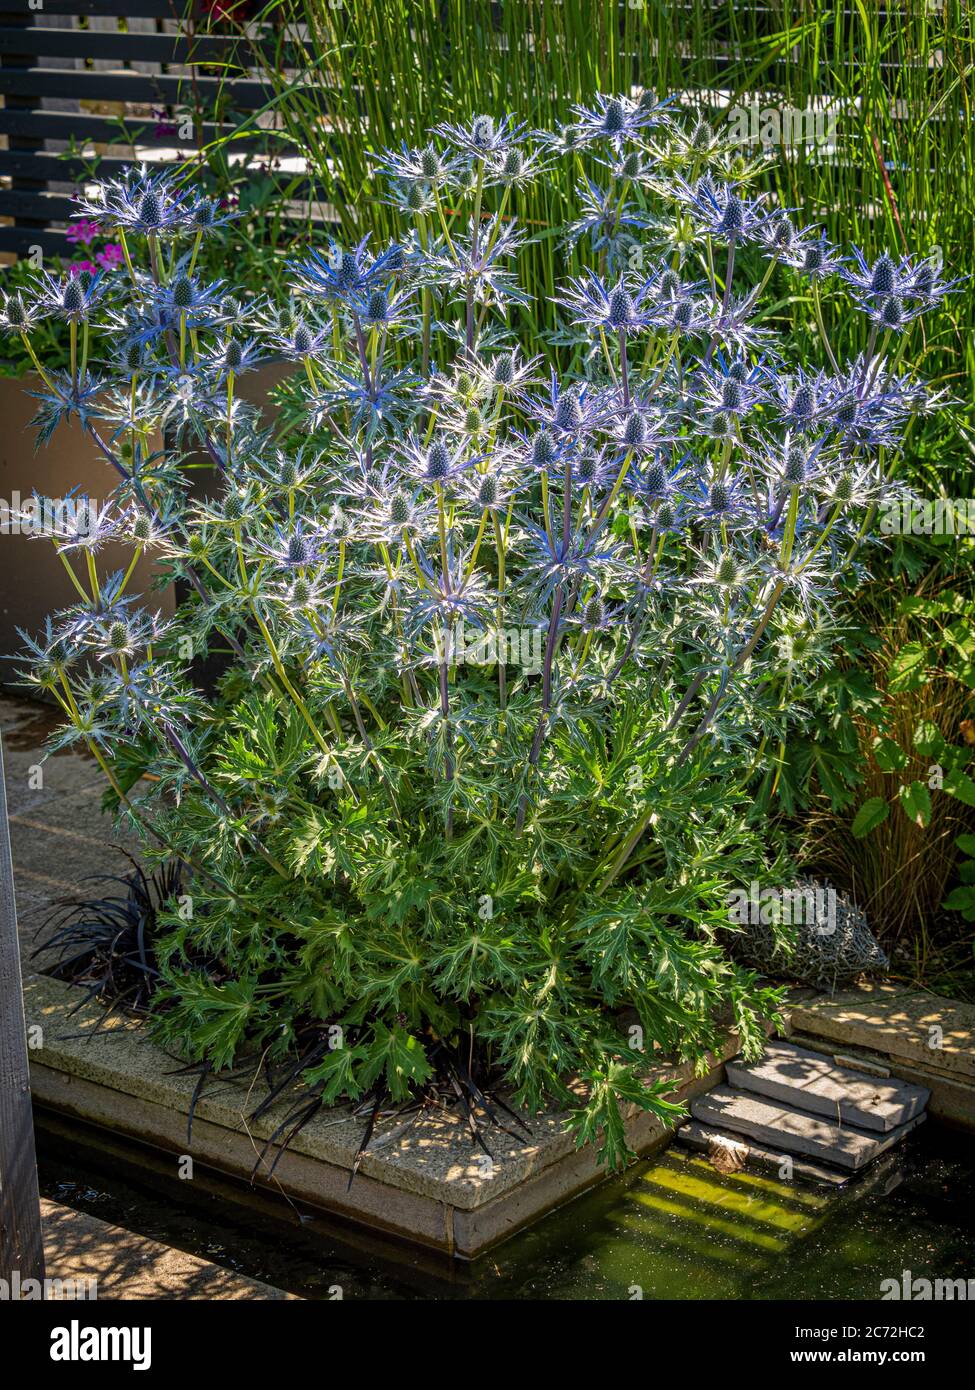 Spiky blaue Blumen von Eryngium wachsen in einem Garten. Stockfoto